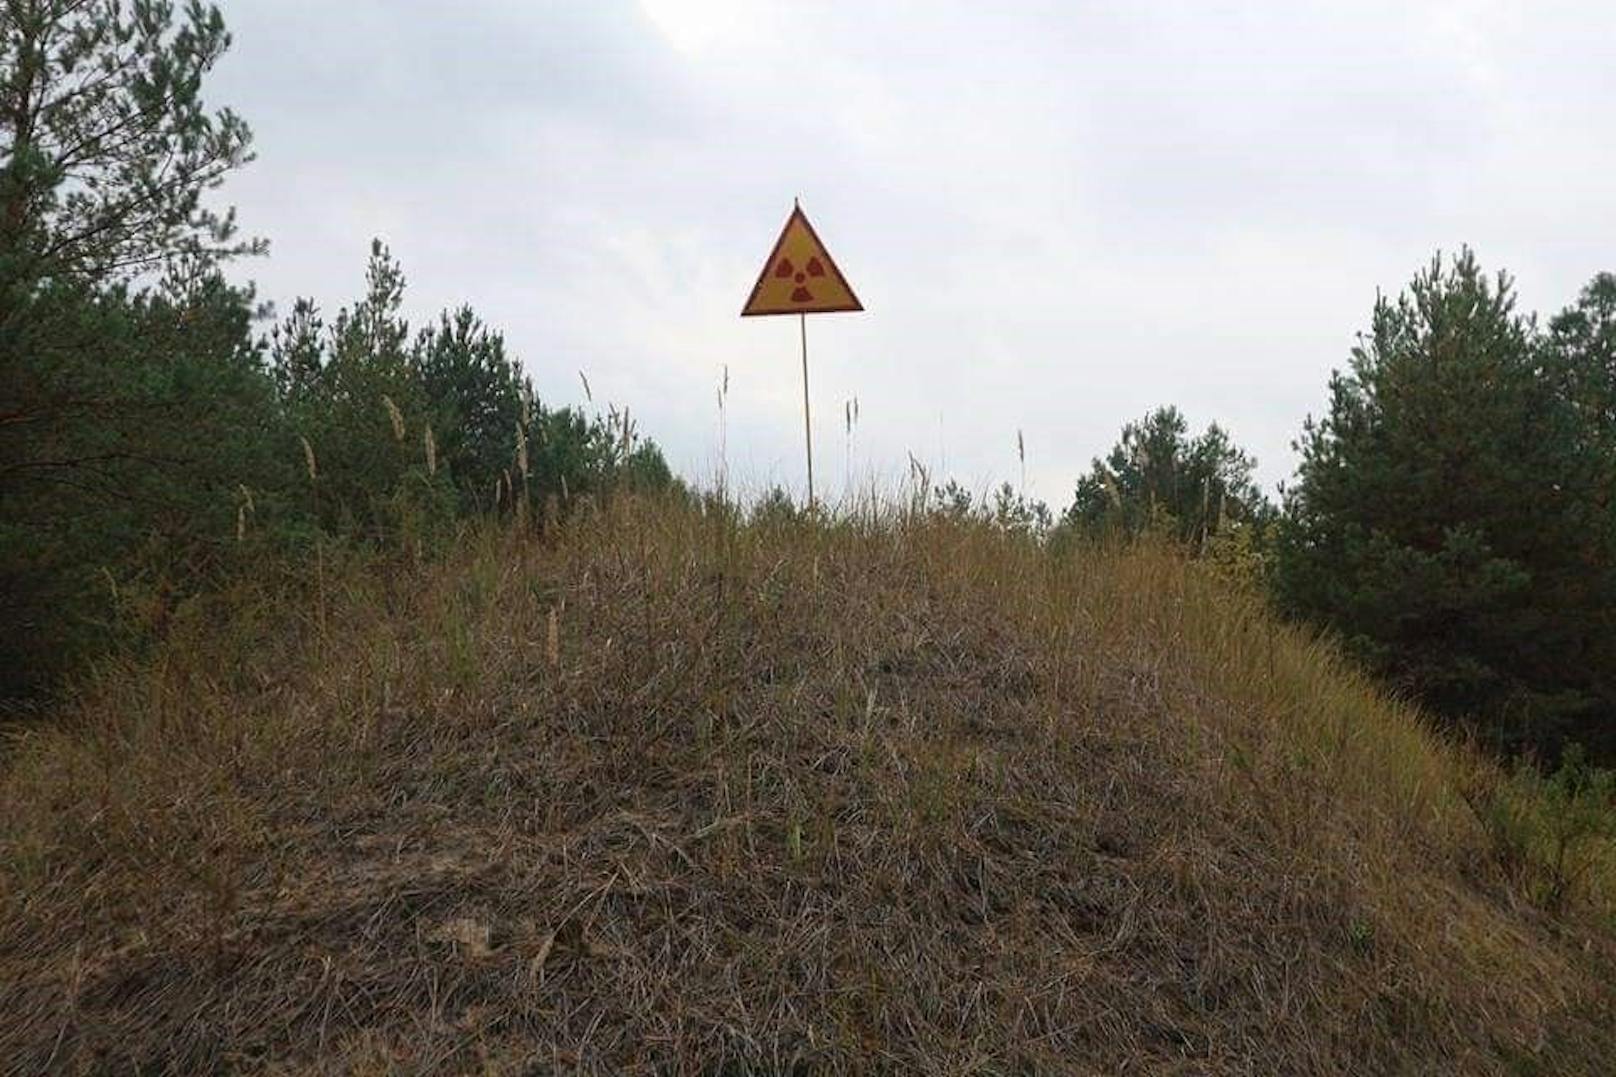 "Es kommt zwar zu keiner richtigen Explosion, aber Radioaktivität wird freigesetzt." Betroffen wäre davon in erster Linie das Gebiet rund um Tschernobyl bis Kiew, so die Einschätzung von Tendl.